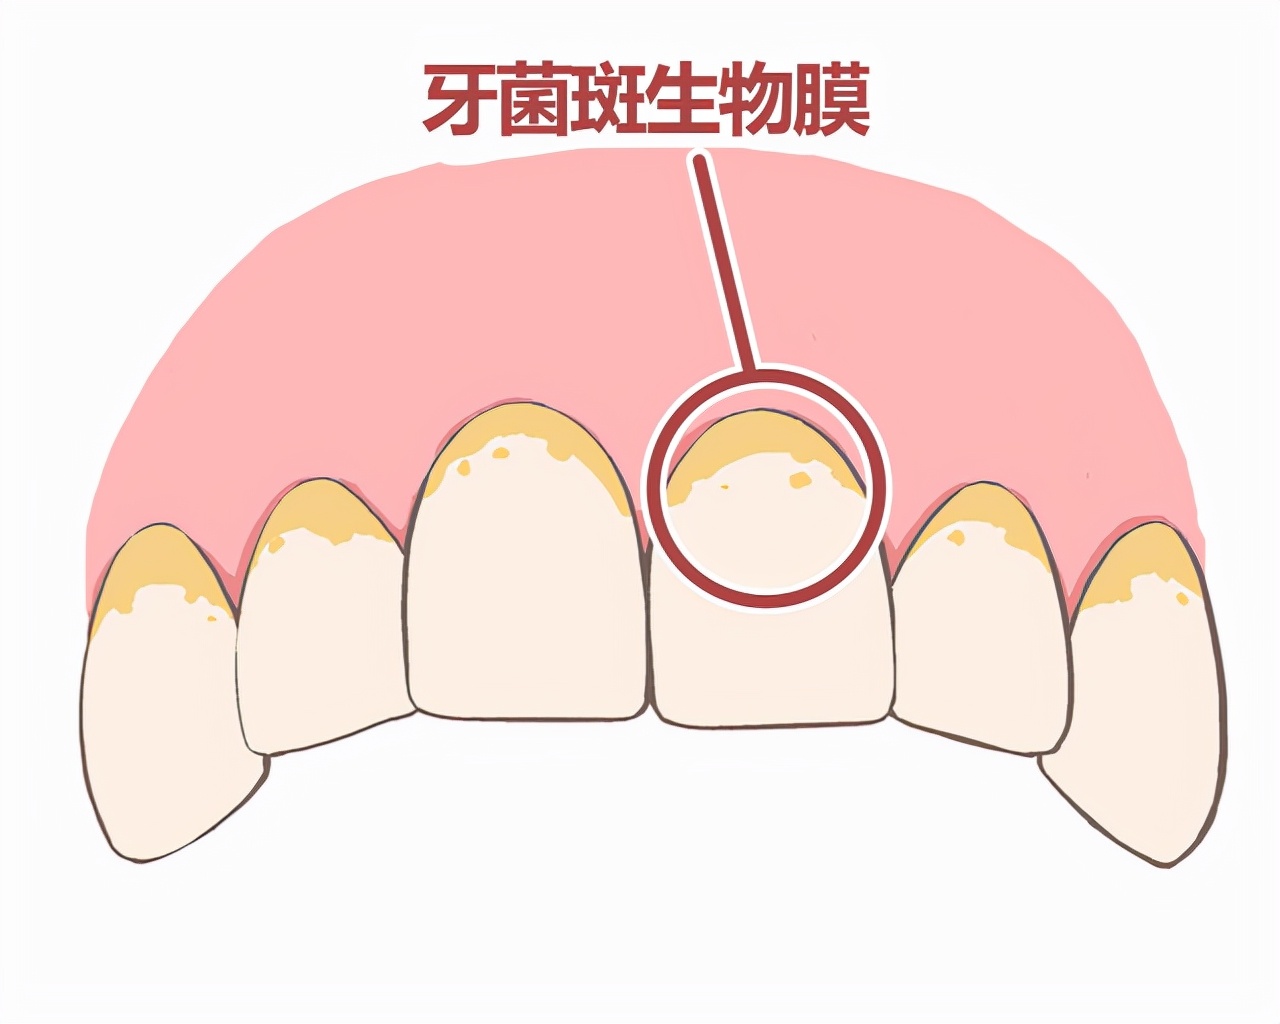 牙龈增生的原因图片